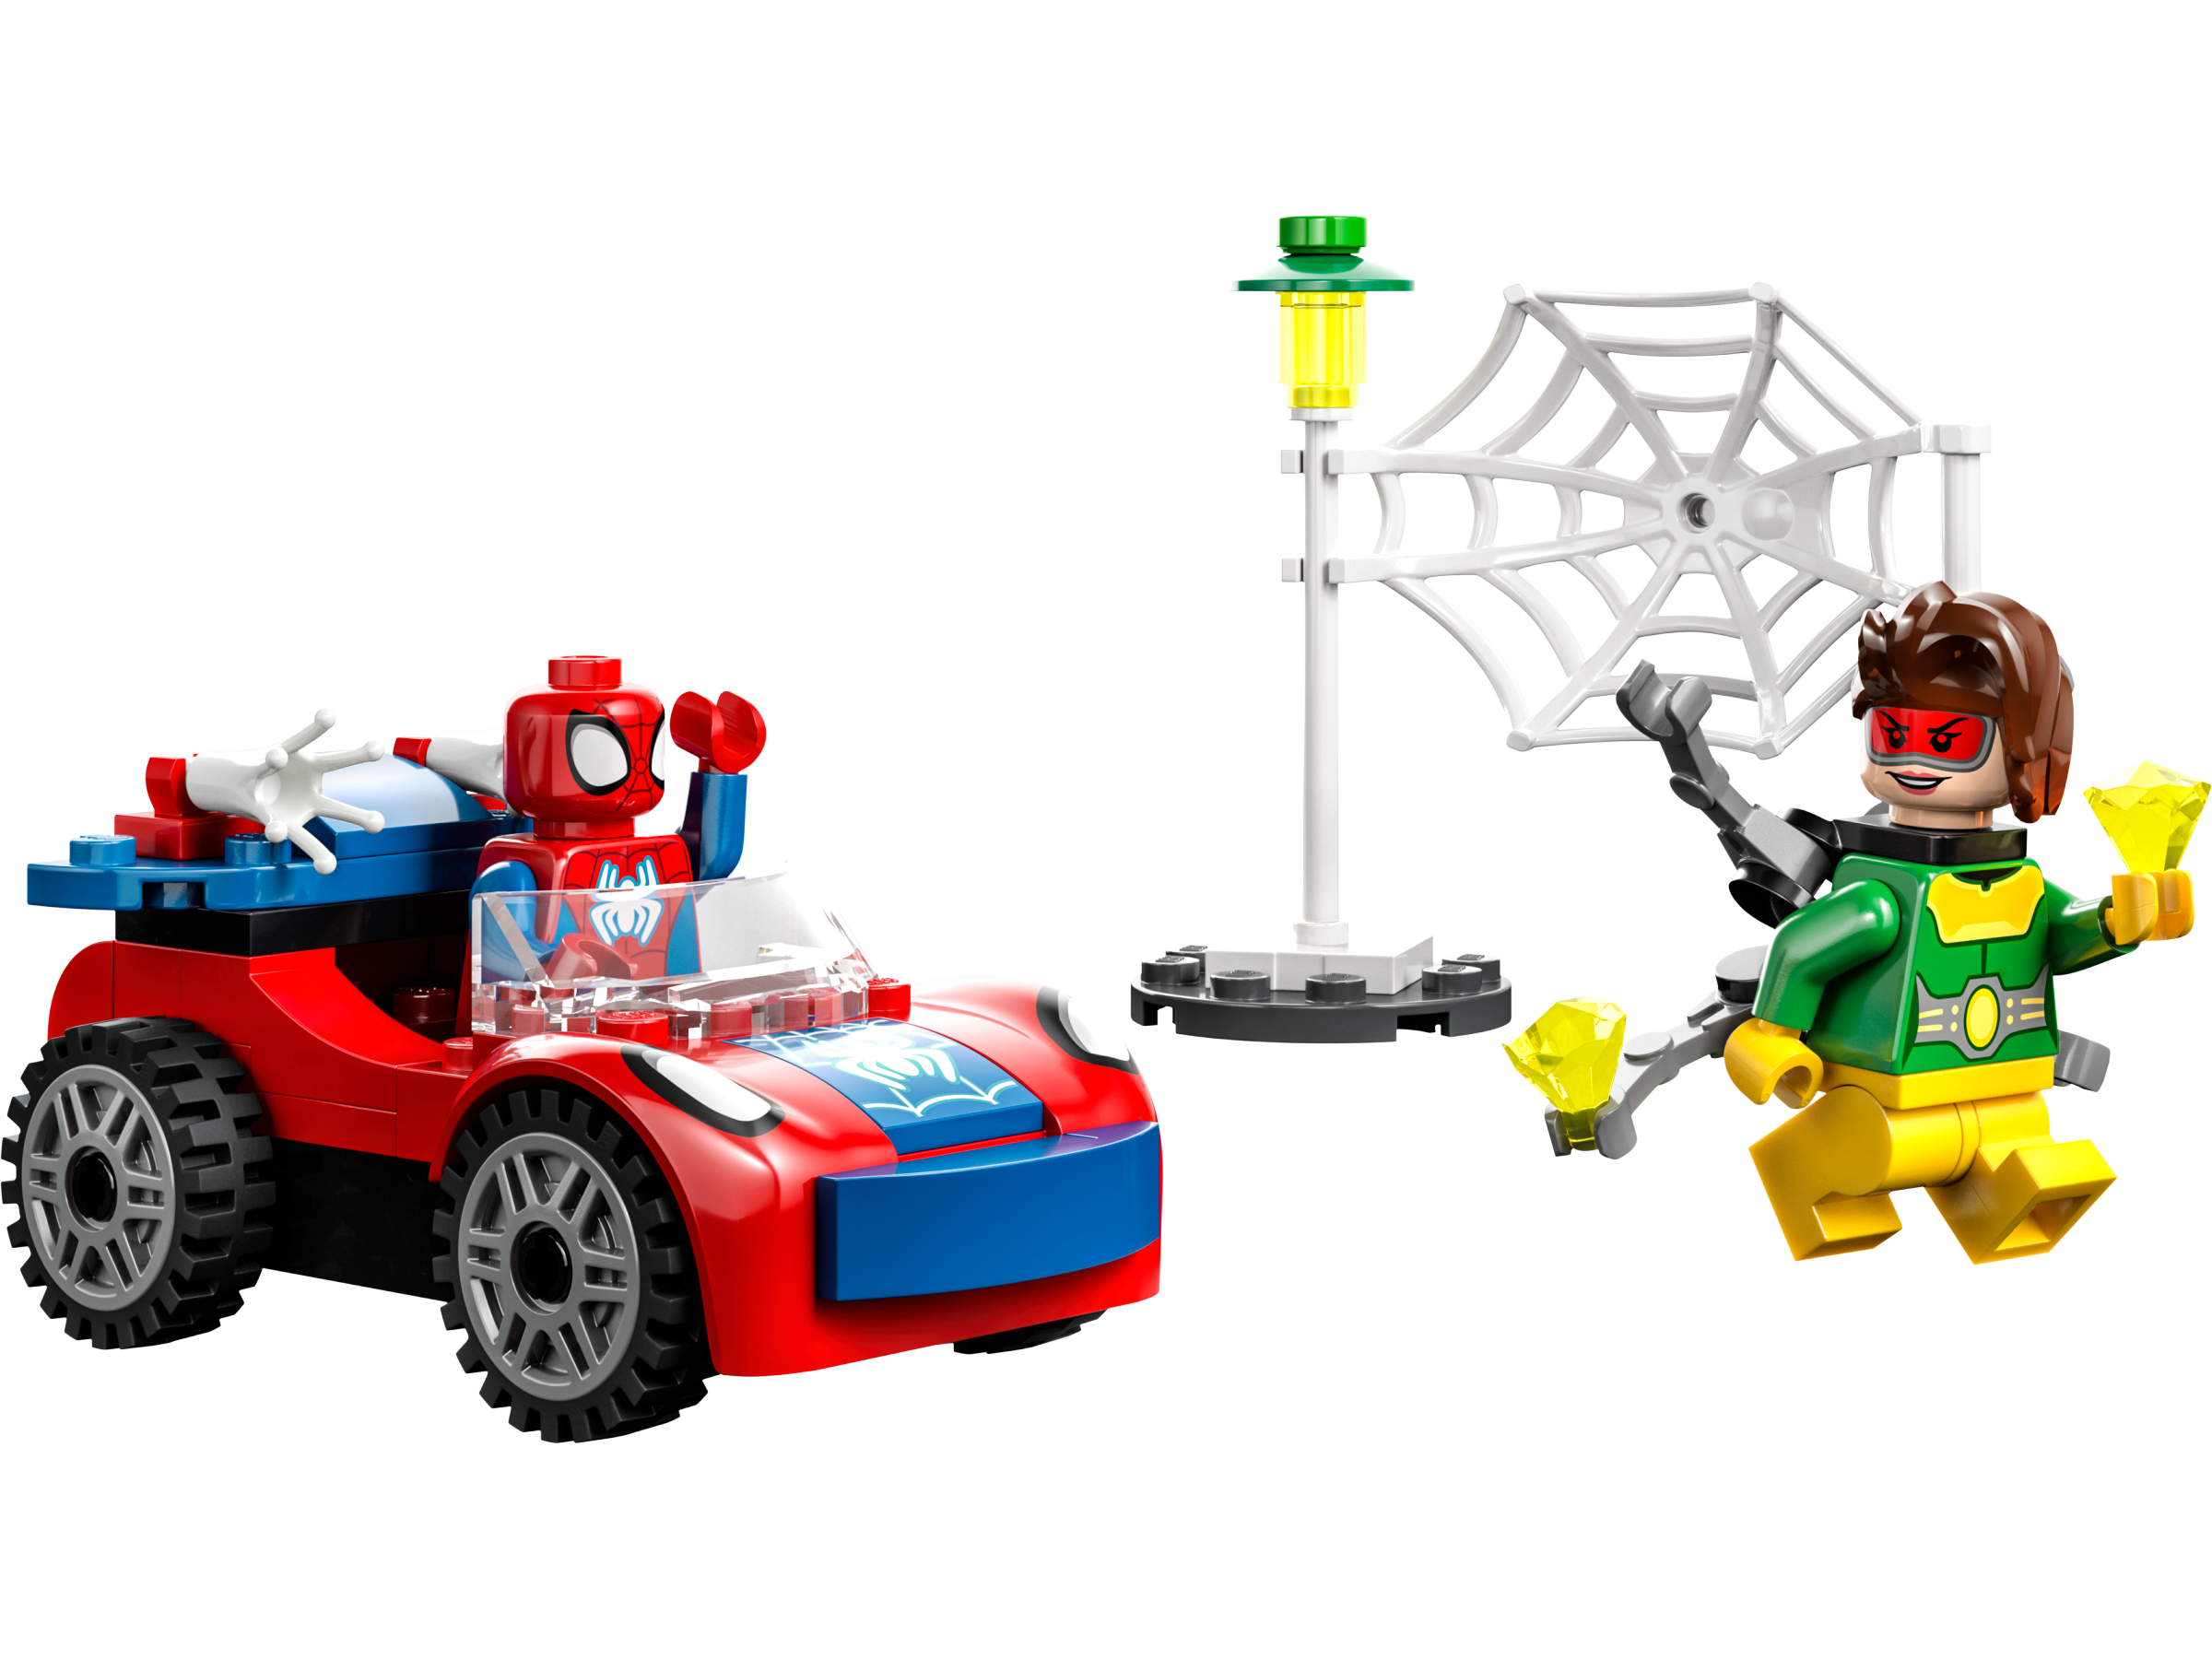 La voiture de Spider-Man et Docteur Octopus 10789, Spider-Man